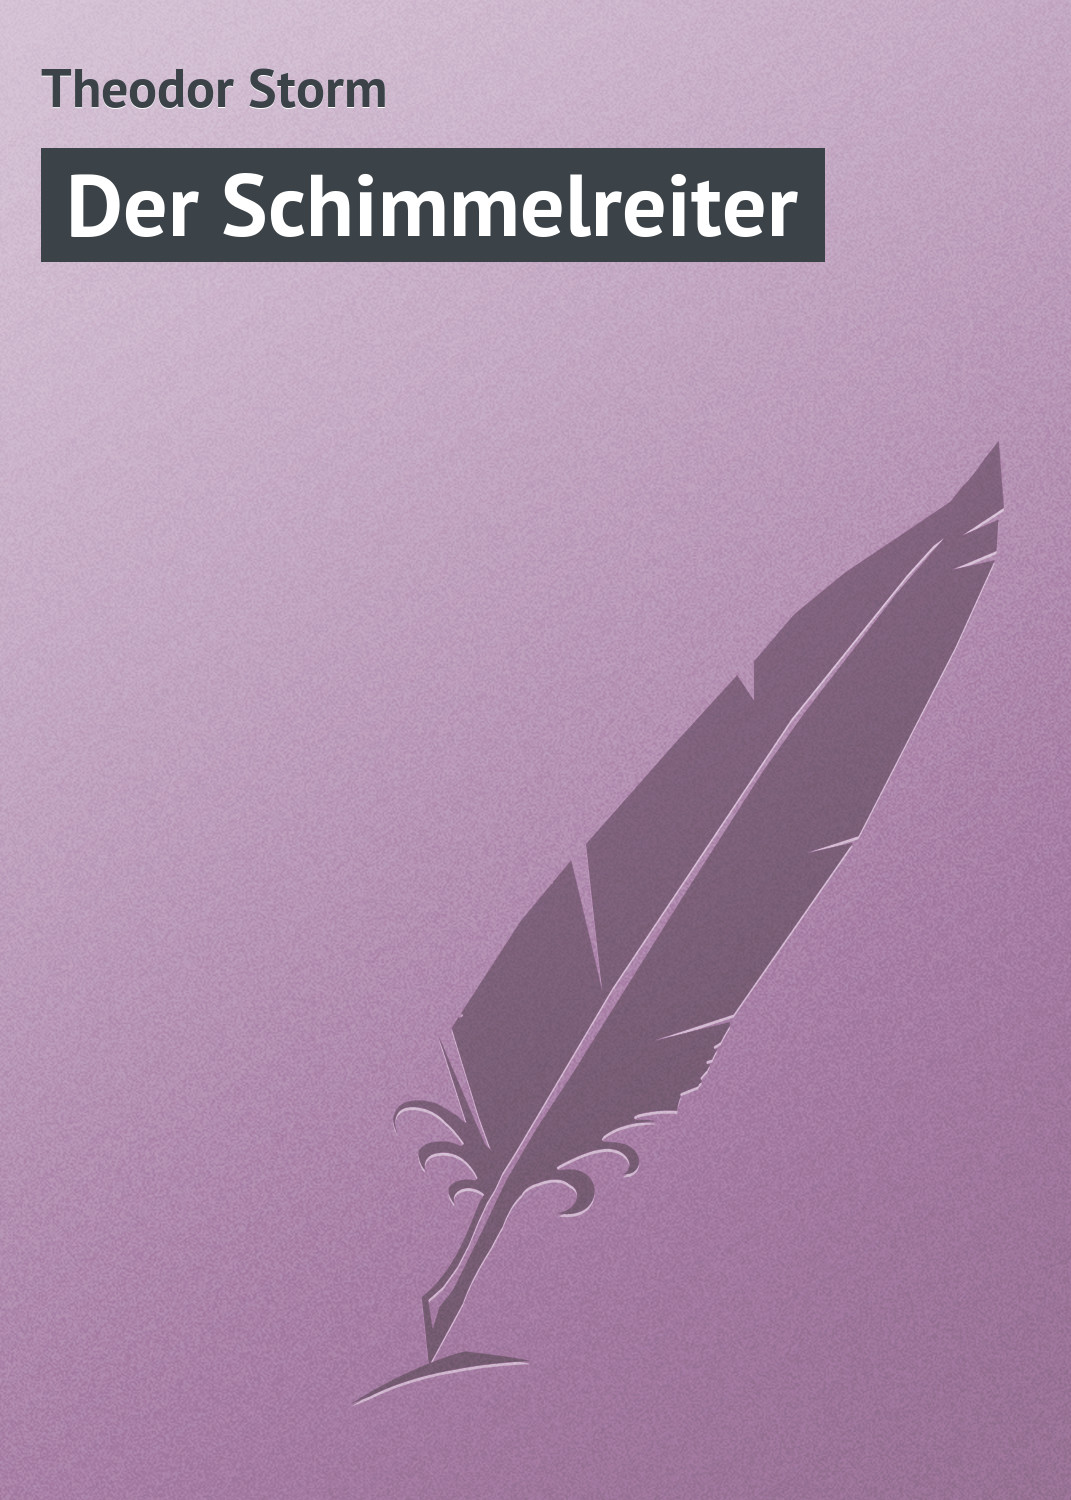 Книга Der Schimmelreiter из серии , созданная Theodor Storm, может относится к жанру Зарубежная старинная литература, Зарубежная классика. Стоимость электронной книги Der Schimmelreiter с идентификатором 21105286 составляет 5.99 руб.